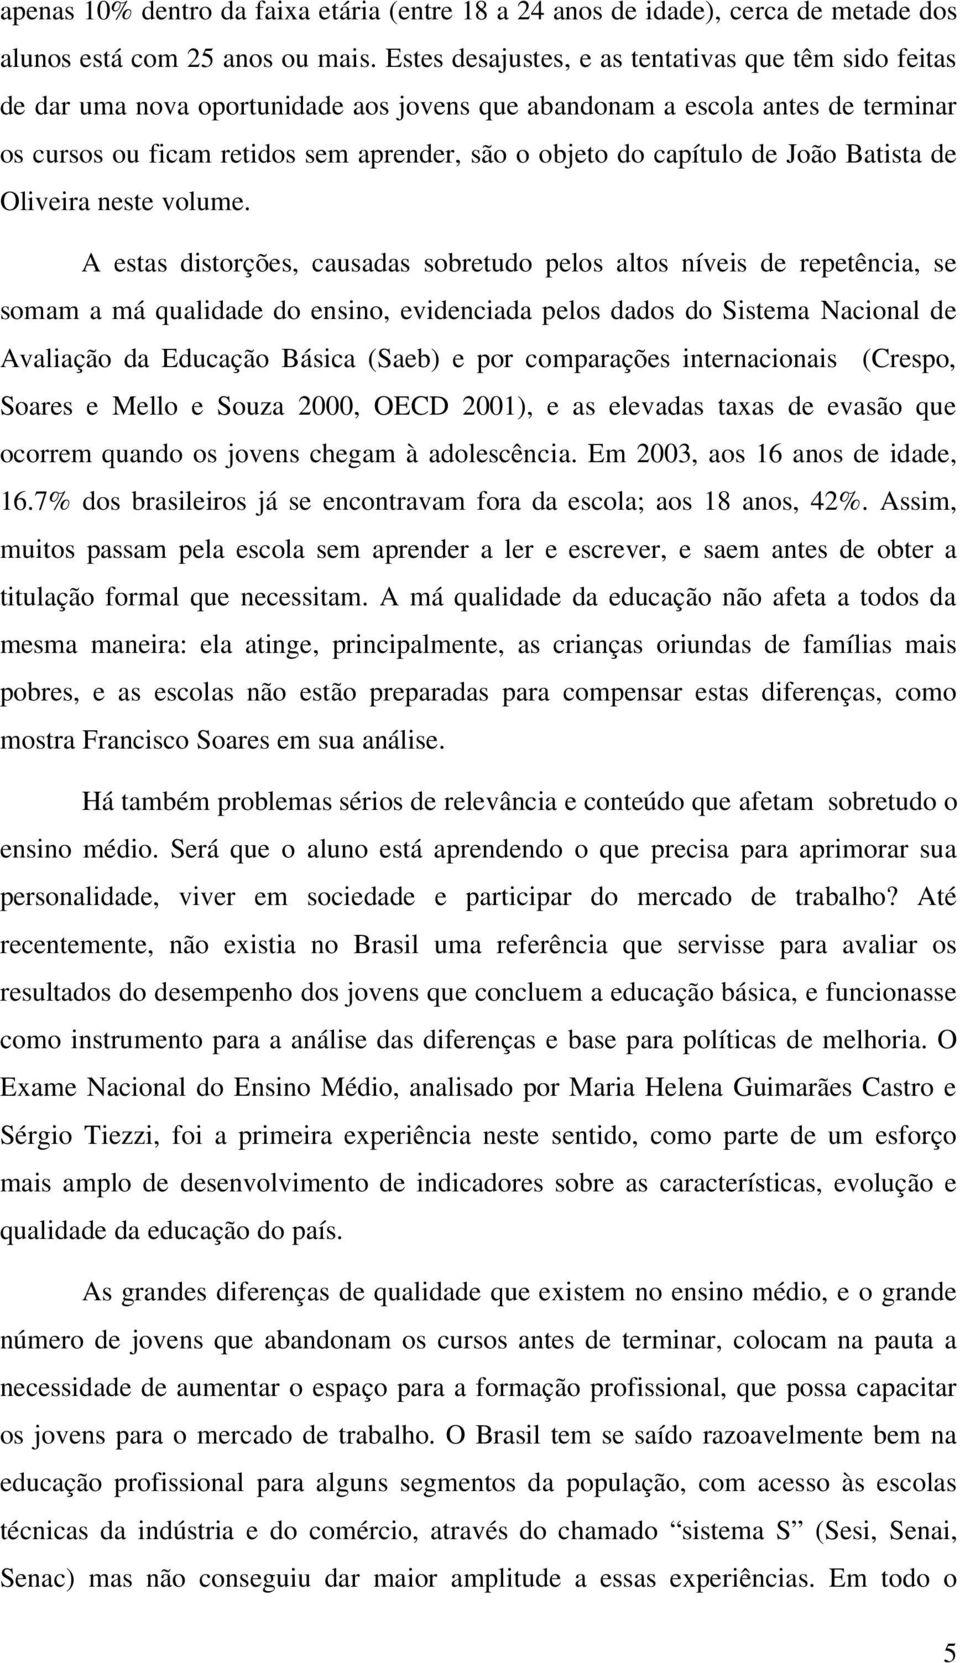 capítulo de João Batista de Oliveira neste volume.